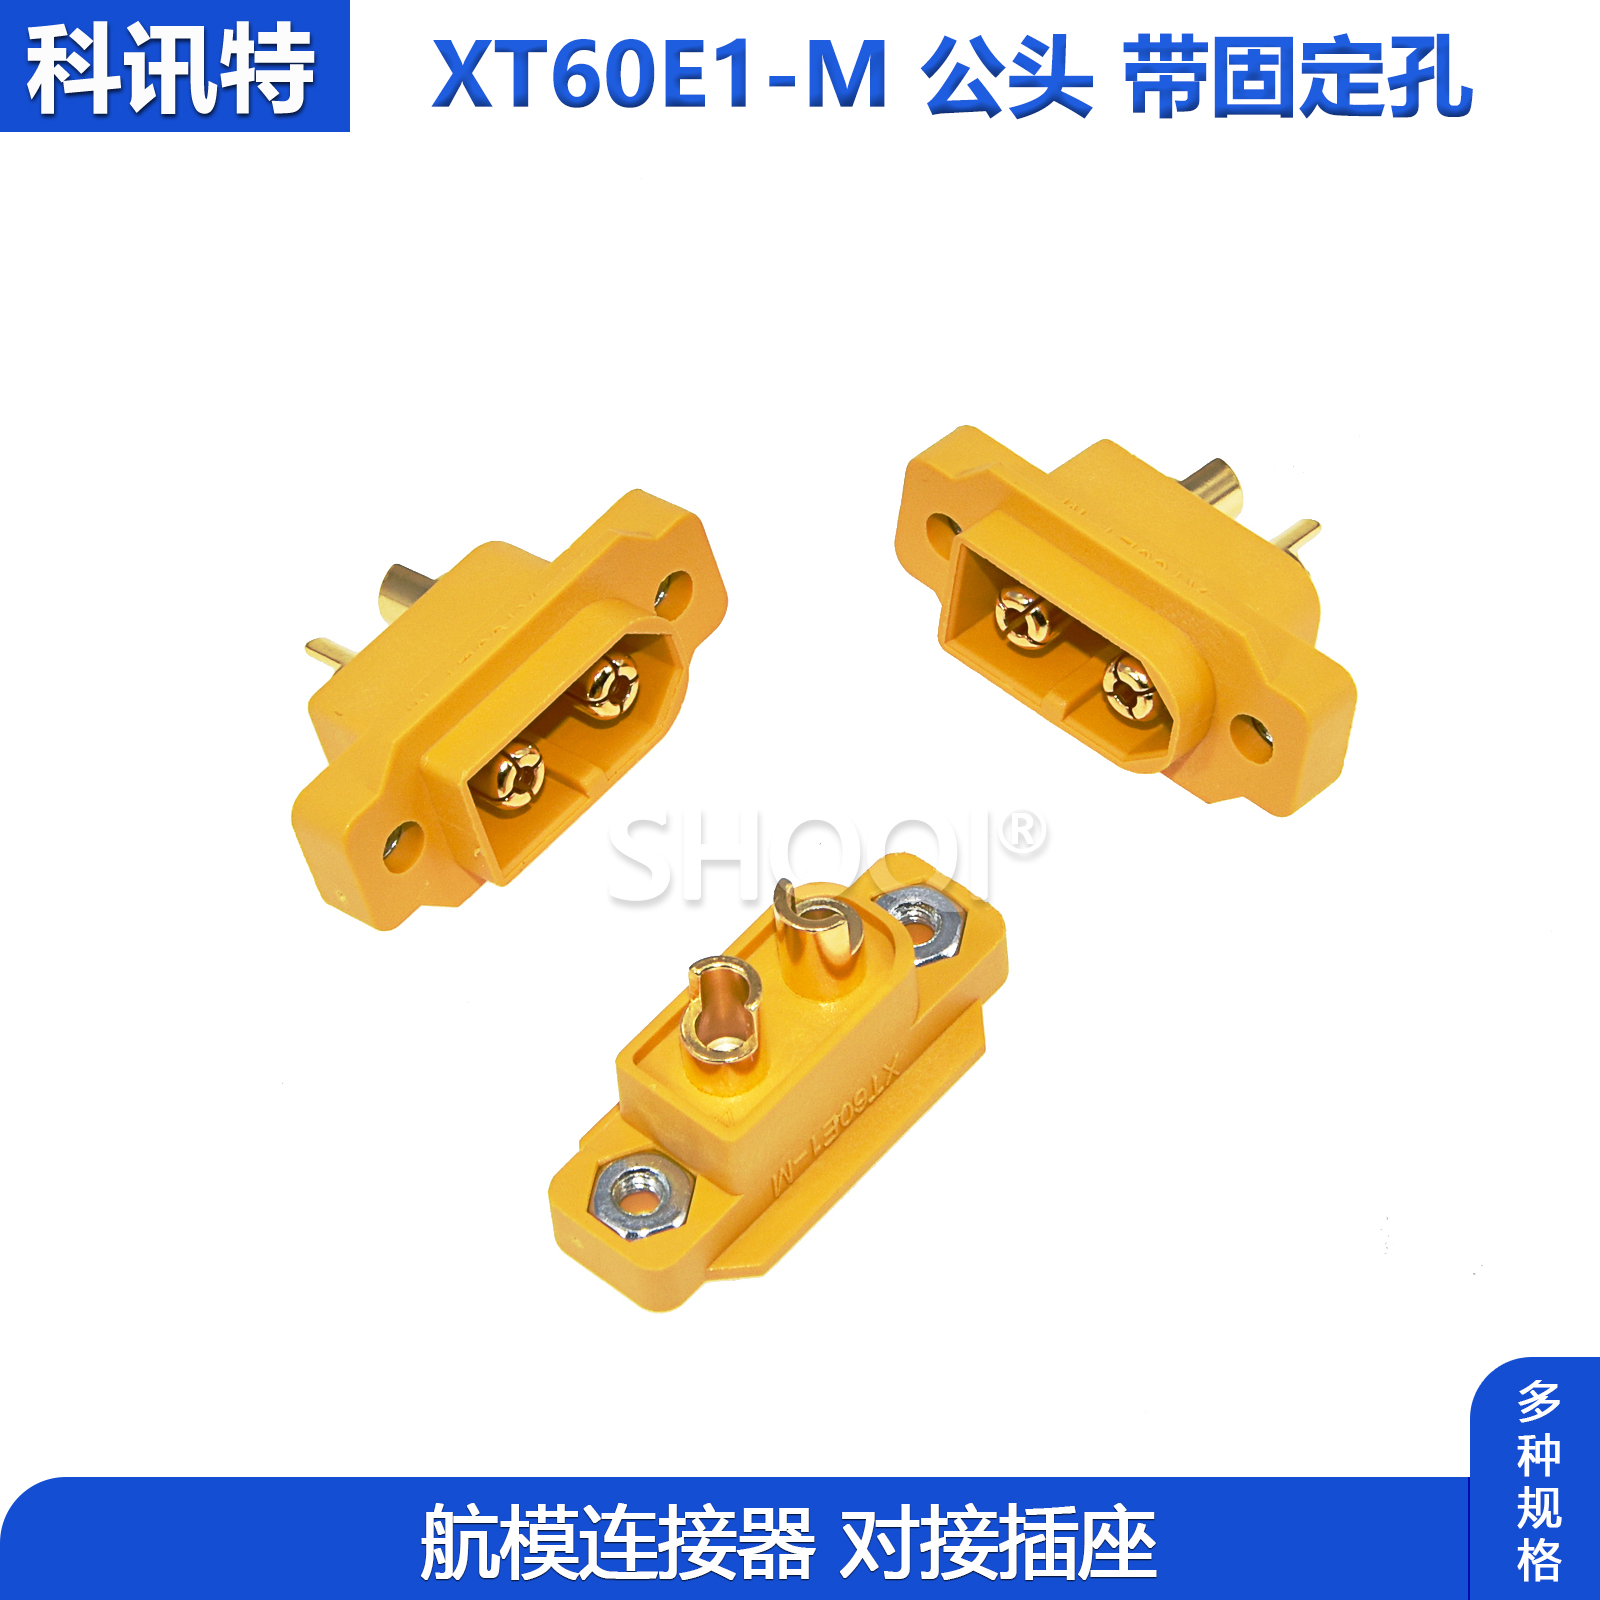 XT60E1-M 公头2P航模动力电池接口香蕉插头模型电机电调插头接插